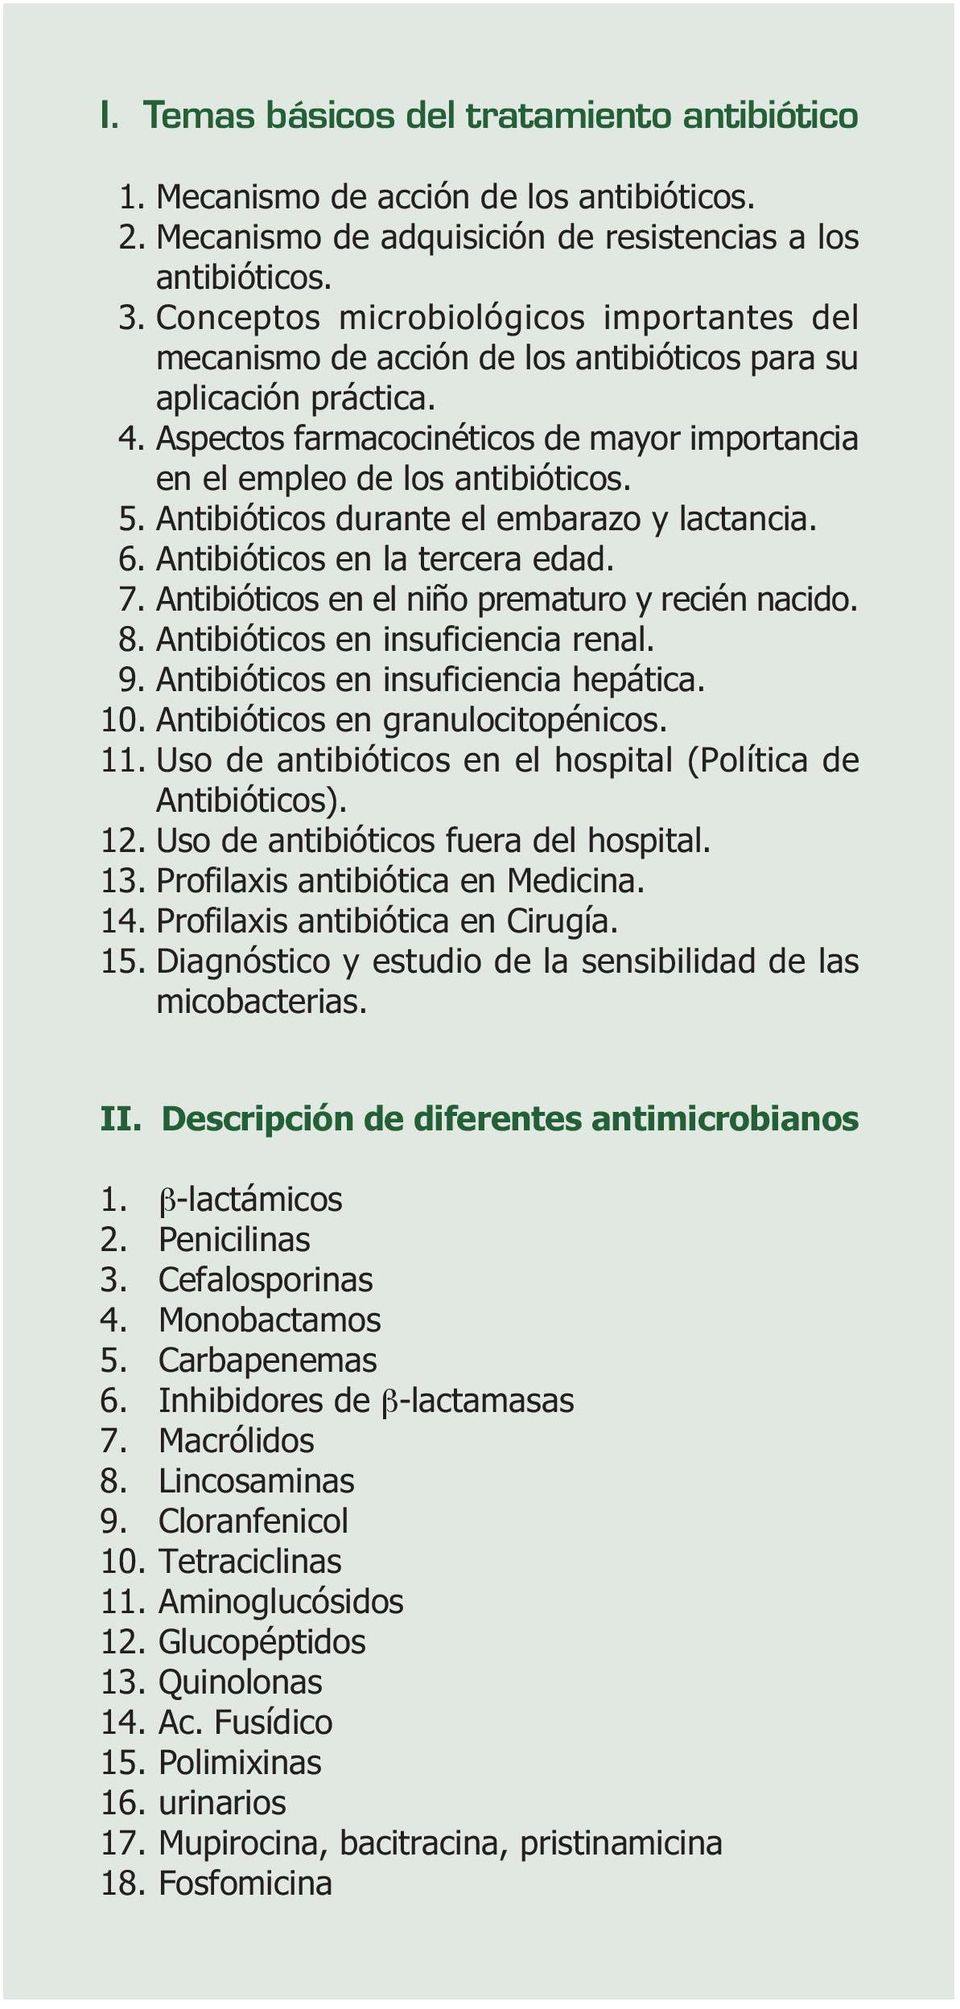 Antibióticos durante el embarazo y lactancia. 6. Antibióticos en la tercera edad. 7. Antibióticos en el niño prematuro y recién nacido. 8. Antibióticos en insuficiencia renal. 9.